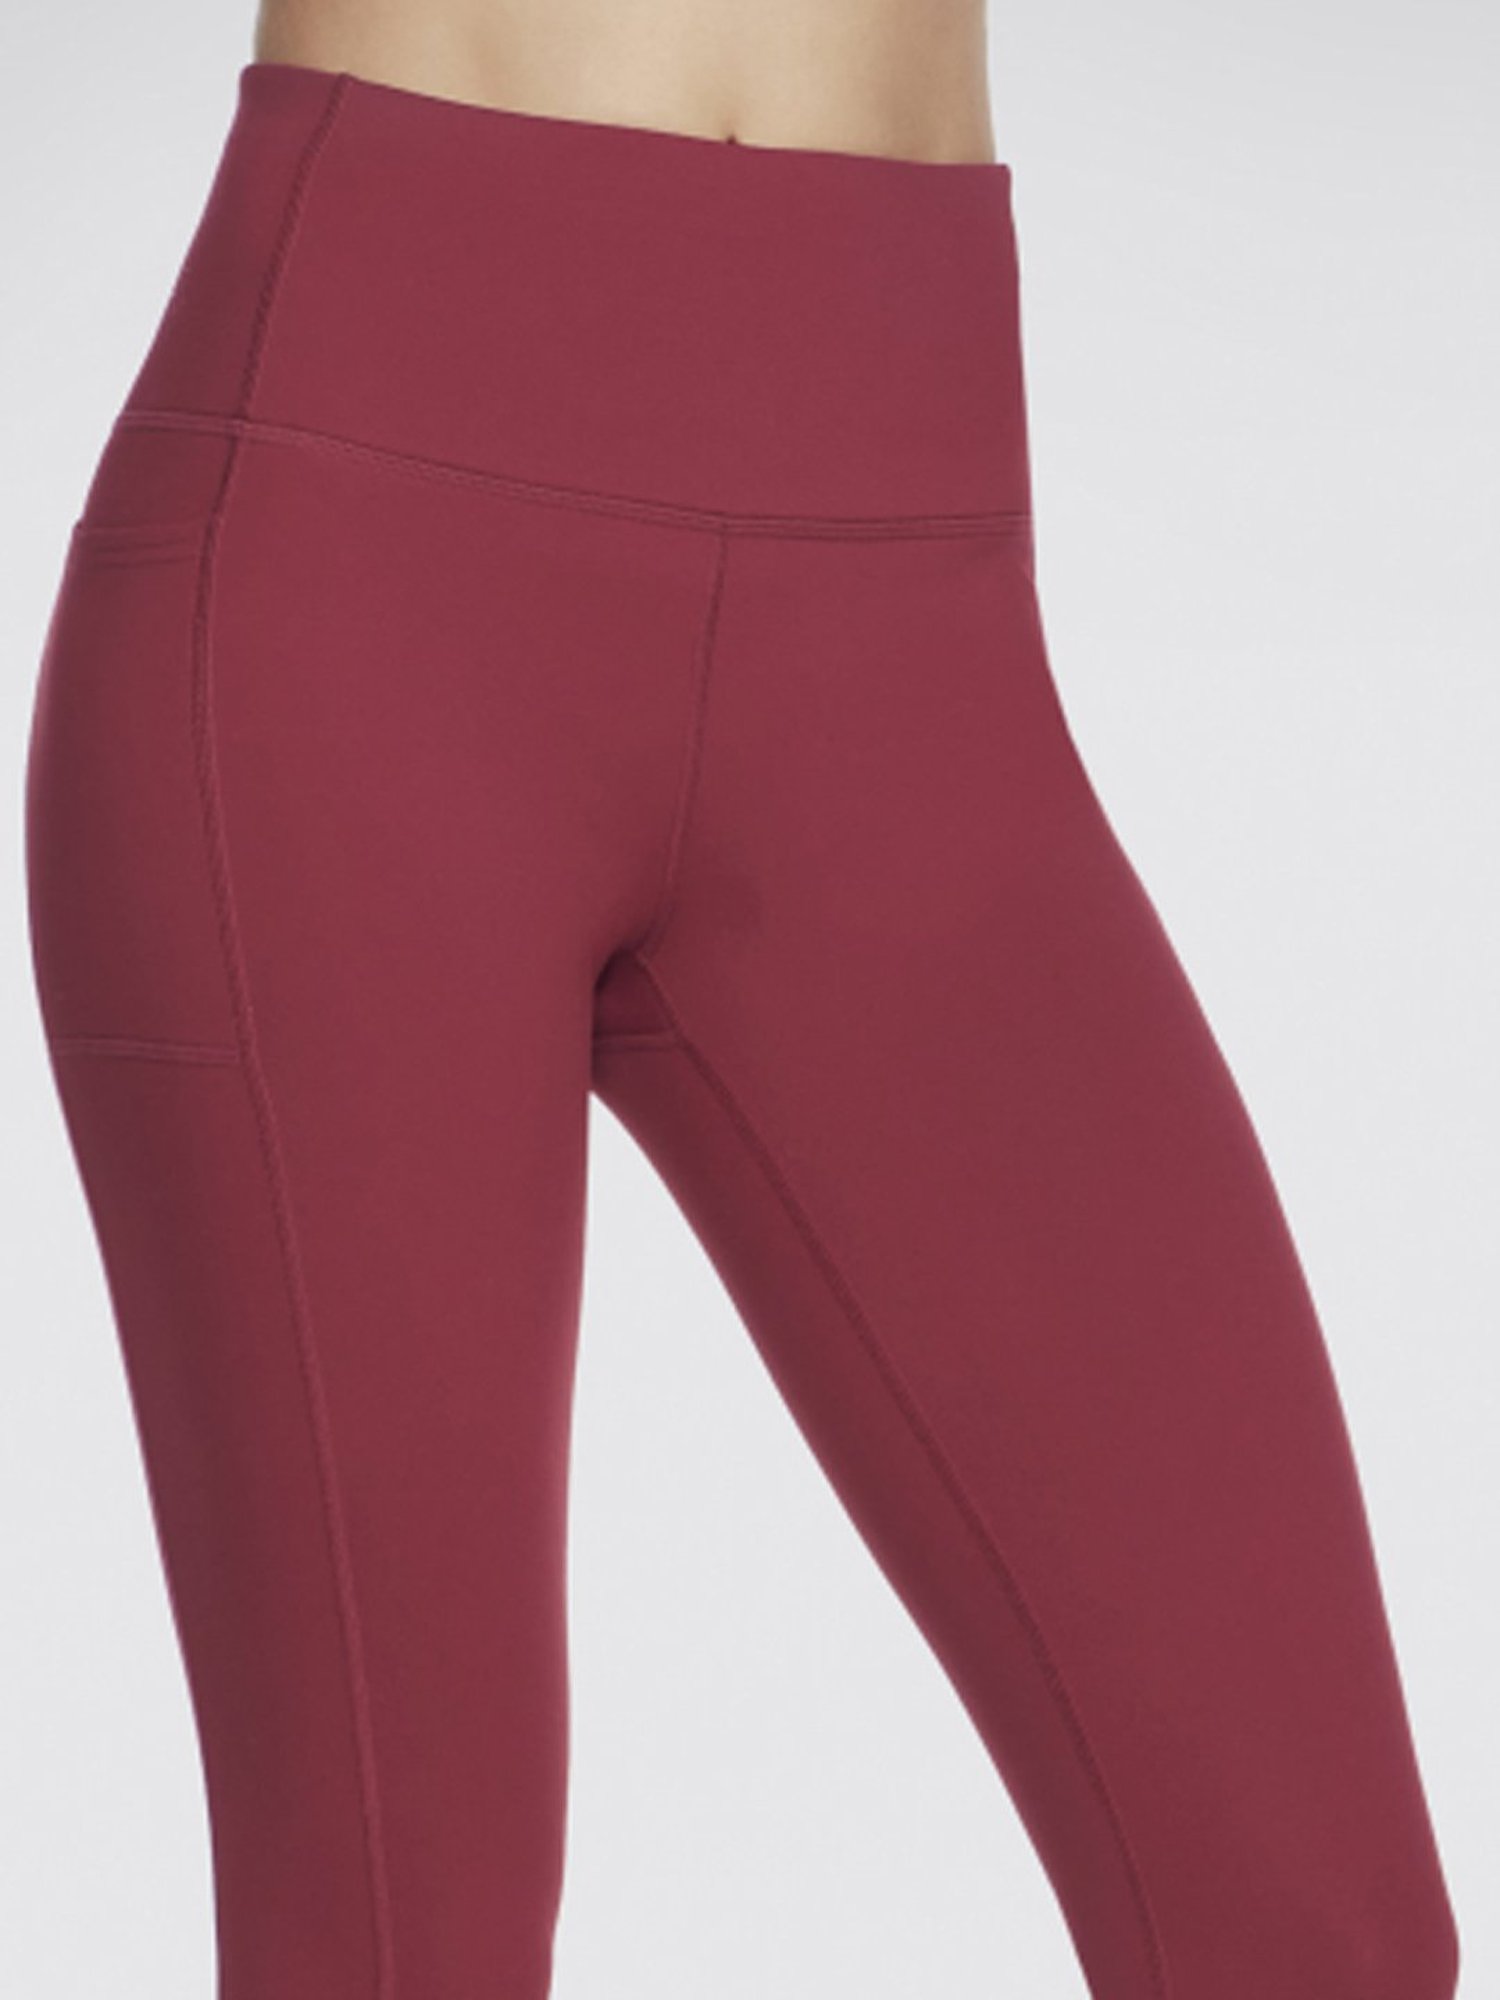 Buy Skechers Pink High Rise Leggings for Women Online @ Tata CLiQ